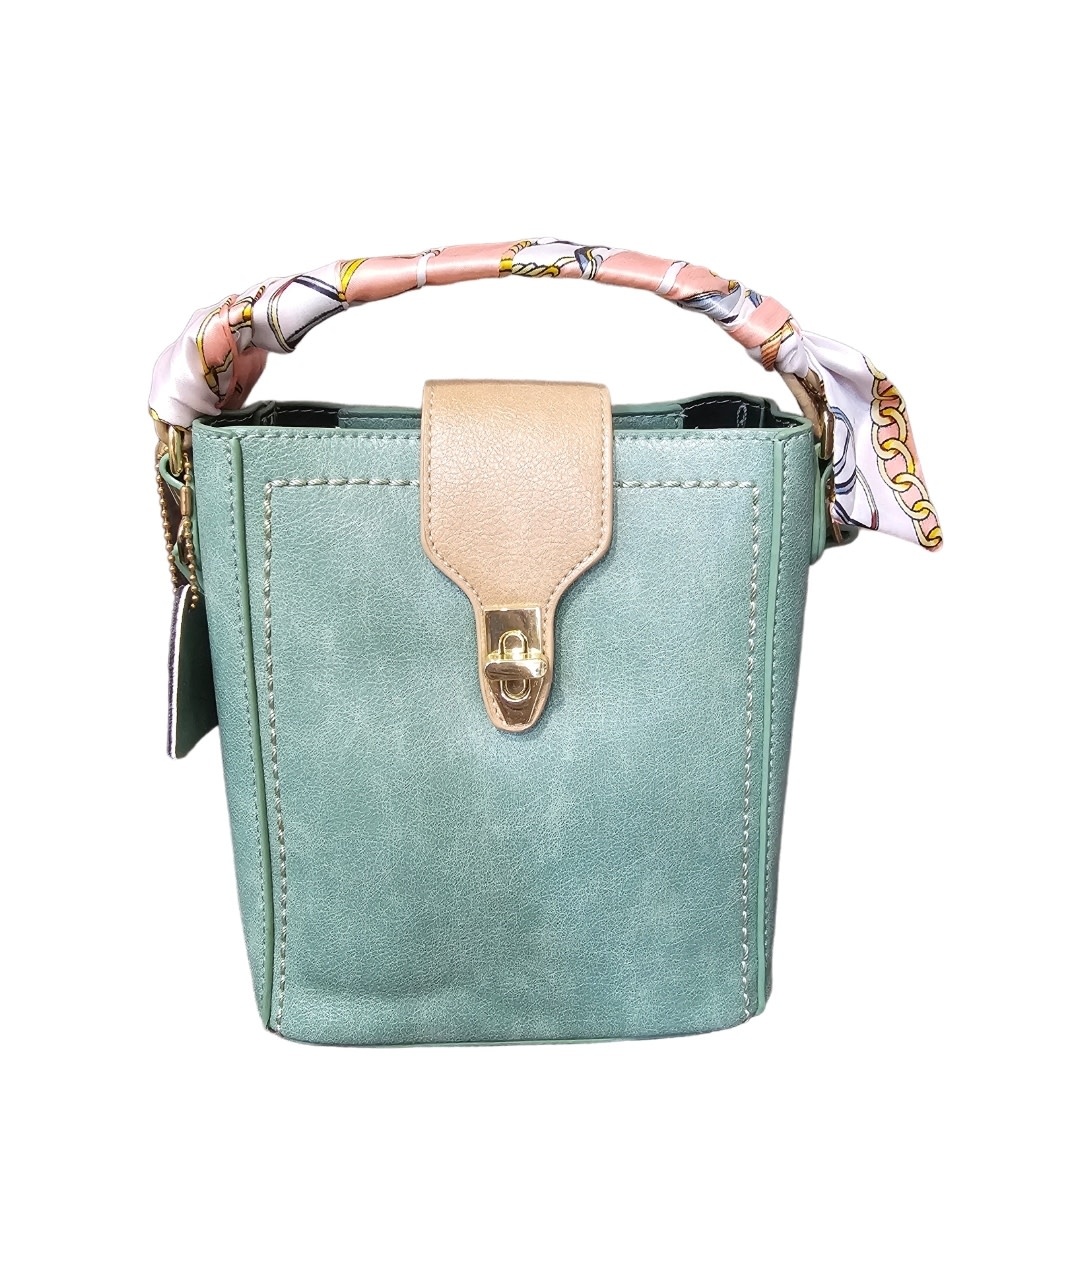 Zeneeba Munro leather handbag